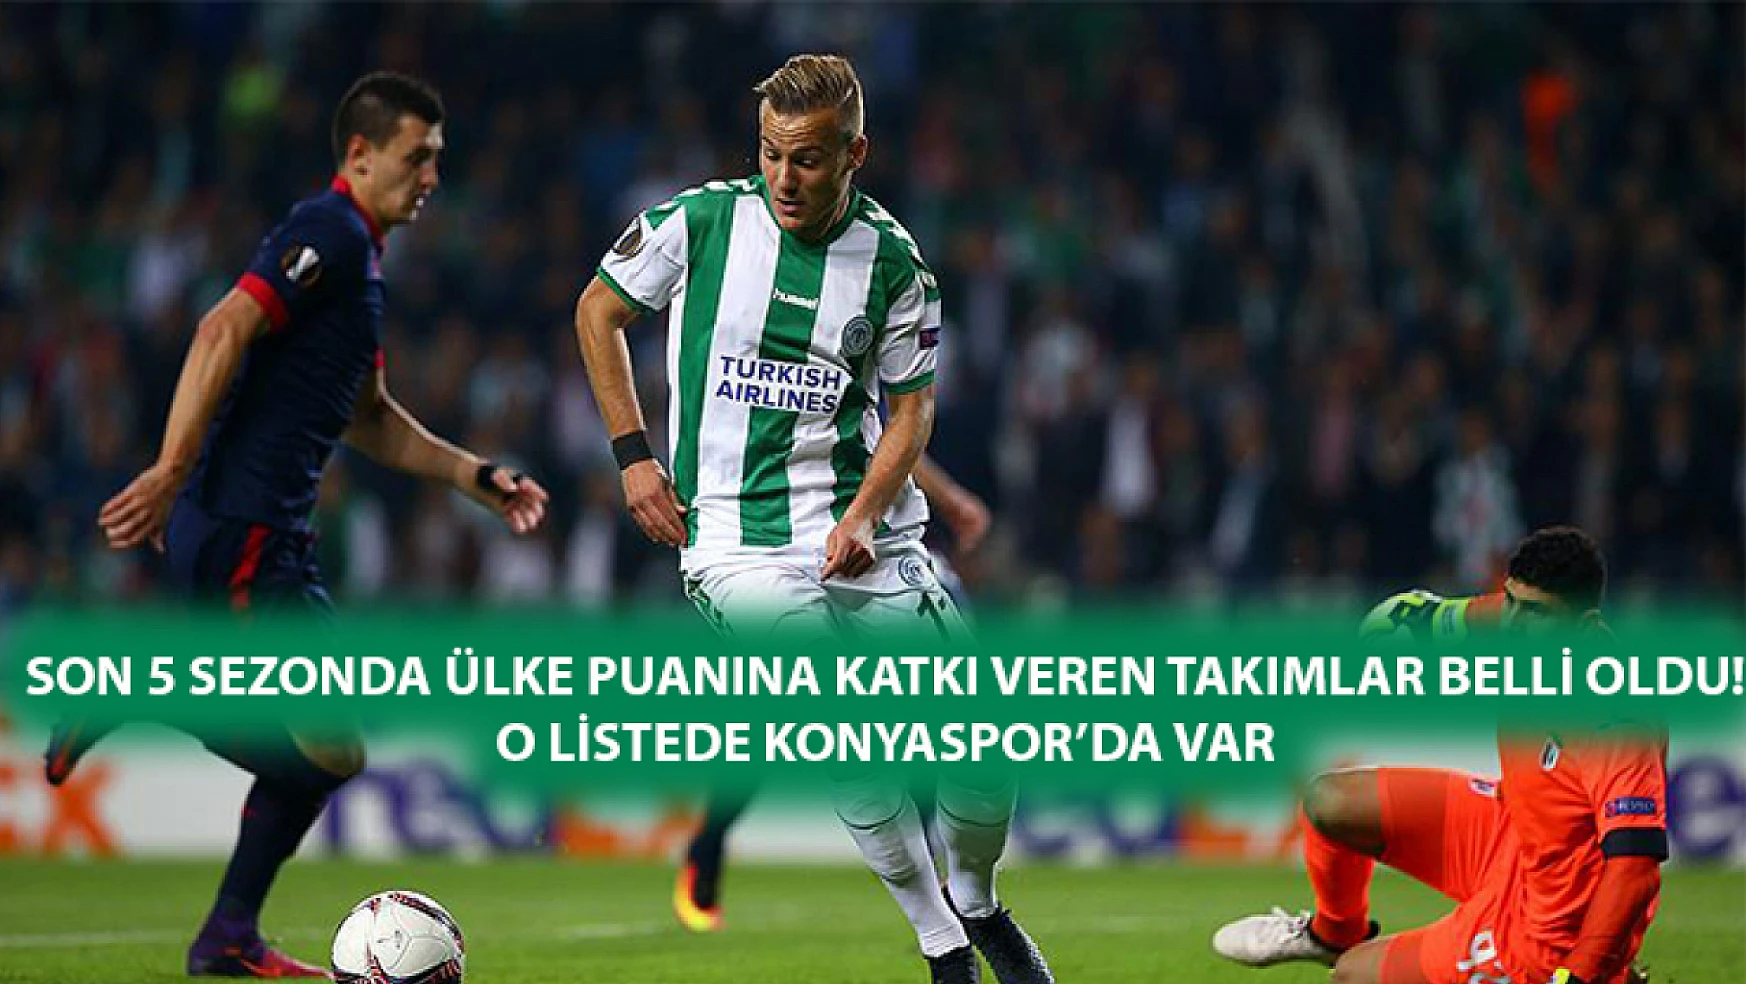 Son 5 sezonda ülke puanına katkı veren takımlar belli oldu! O listede Konyaspor'da var